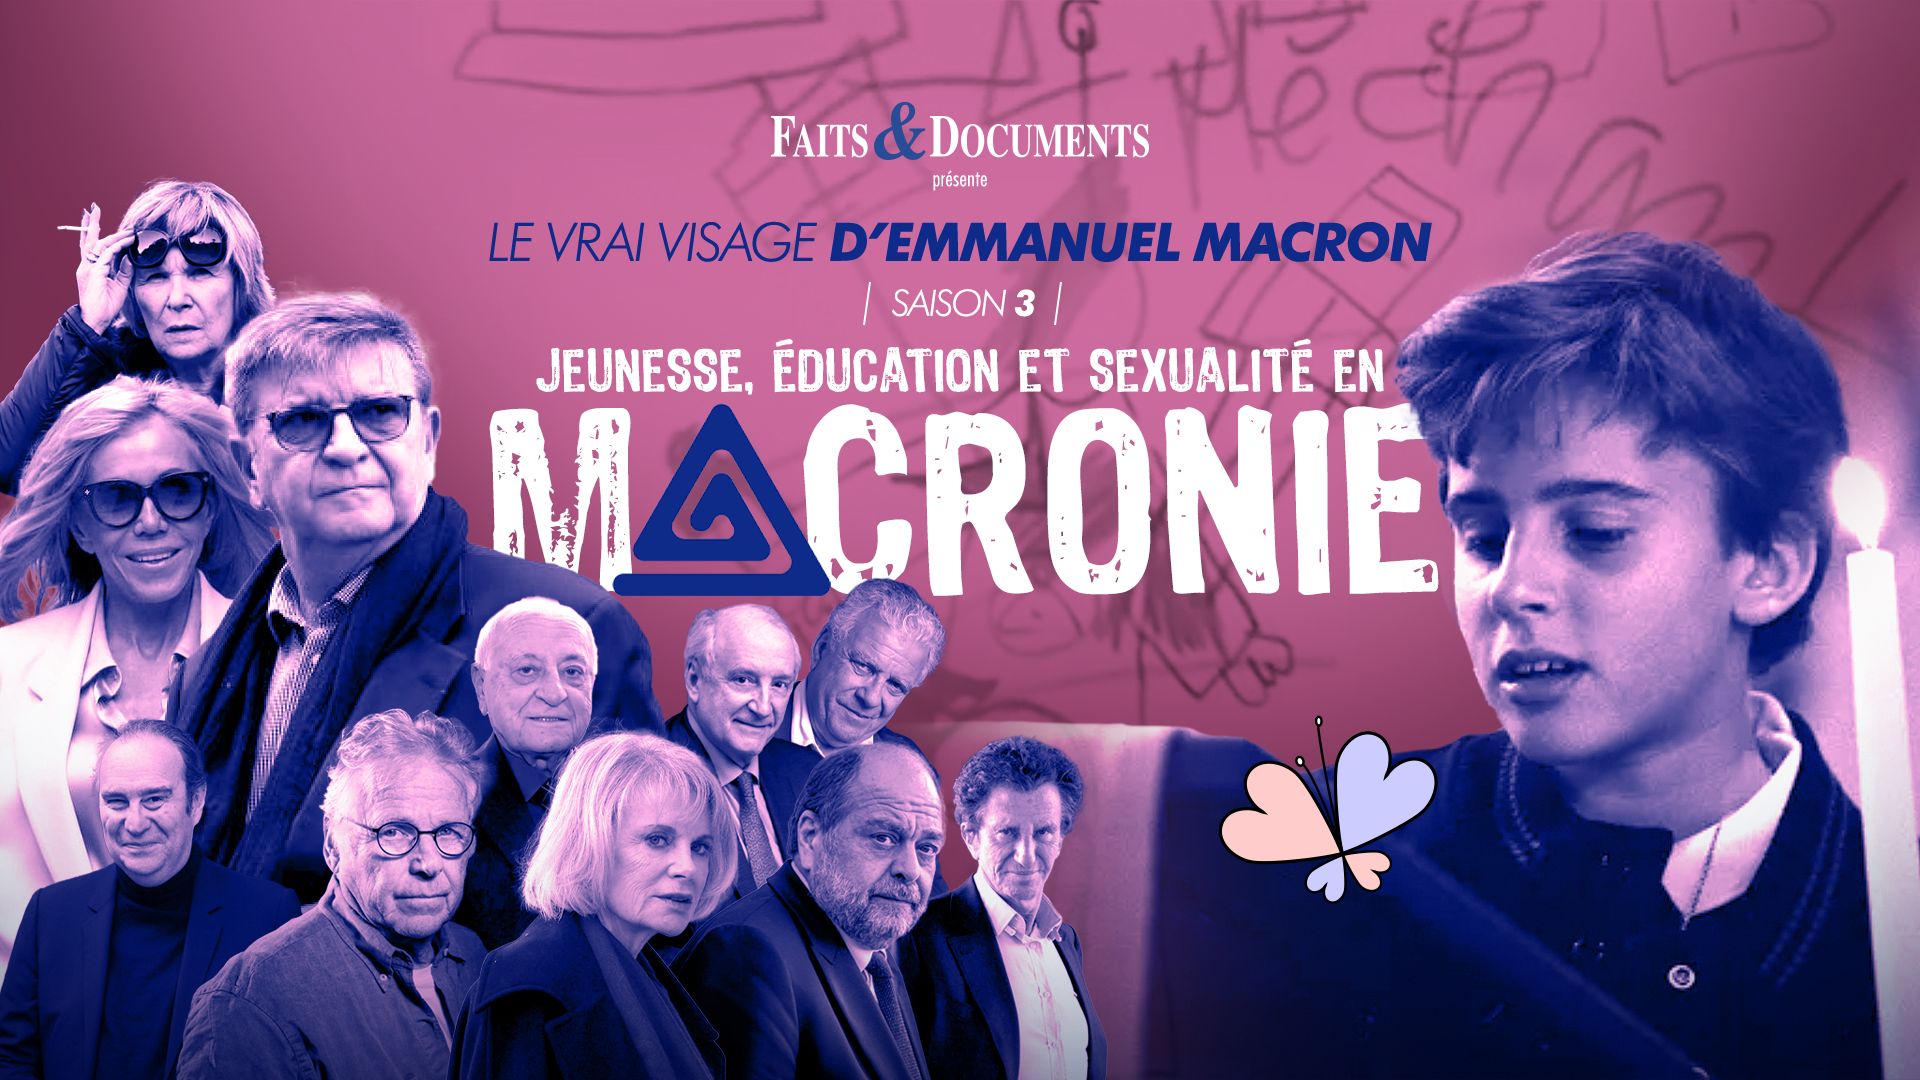 Le Vrai visage d’Emmanuel Macron